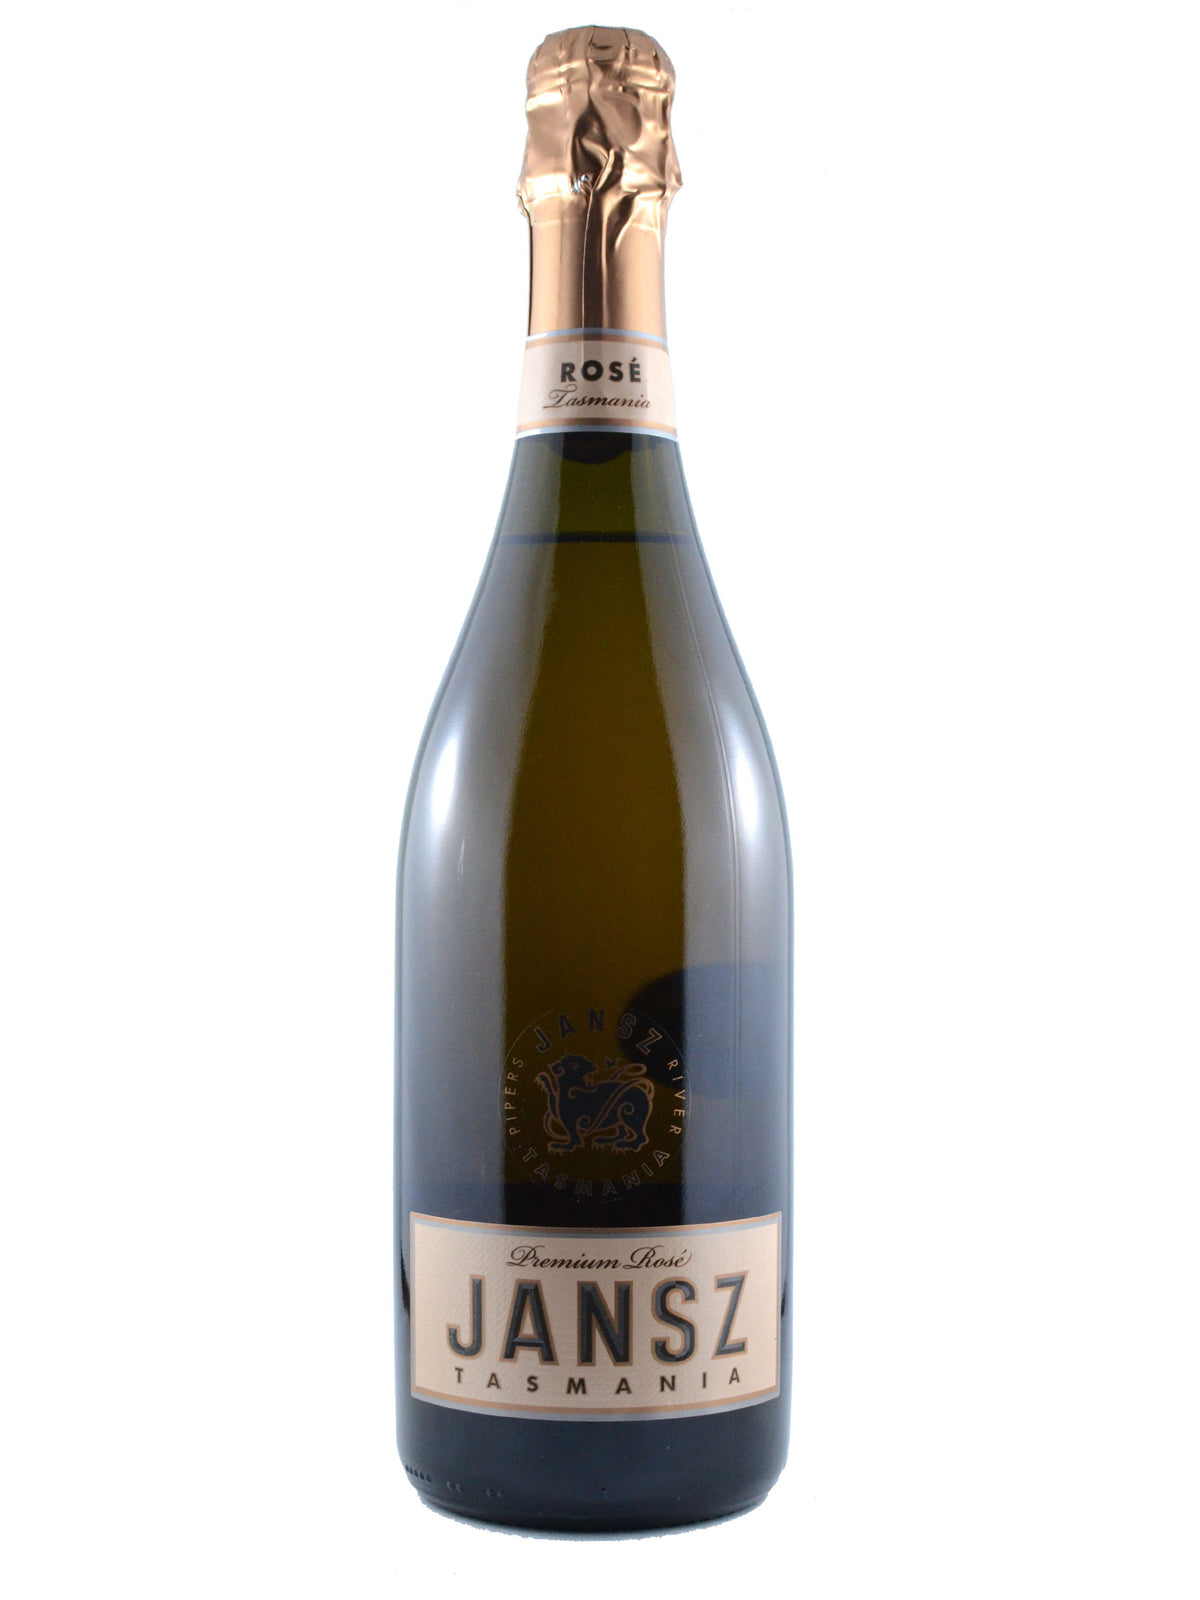 Jansz Premium Rosé Sparkling Wine